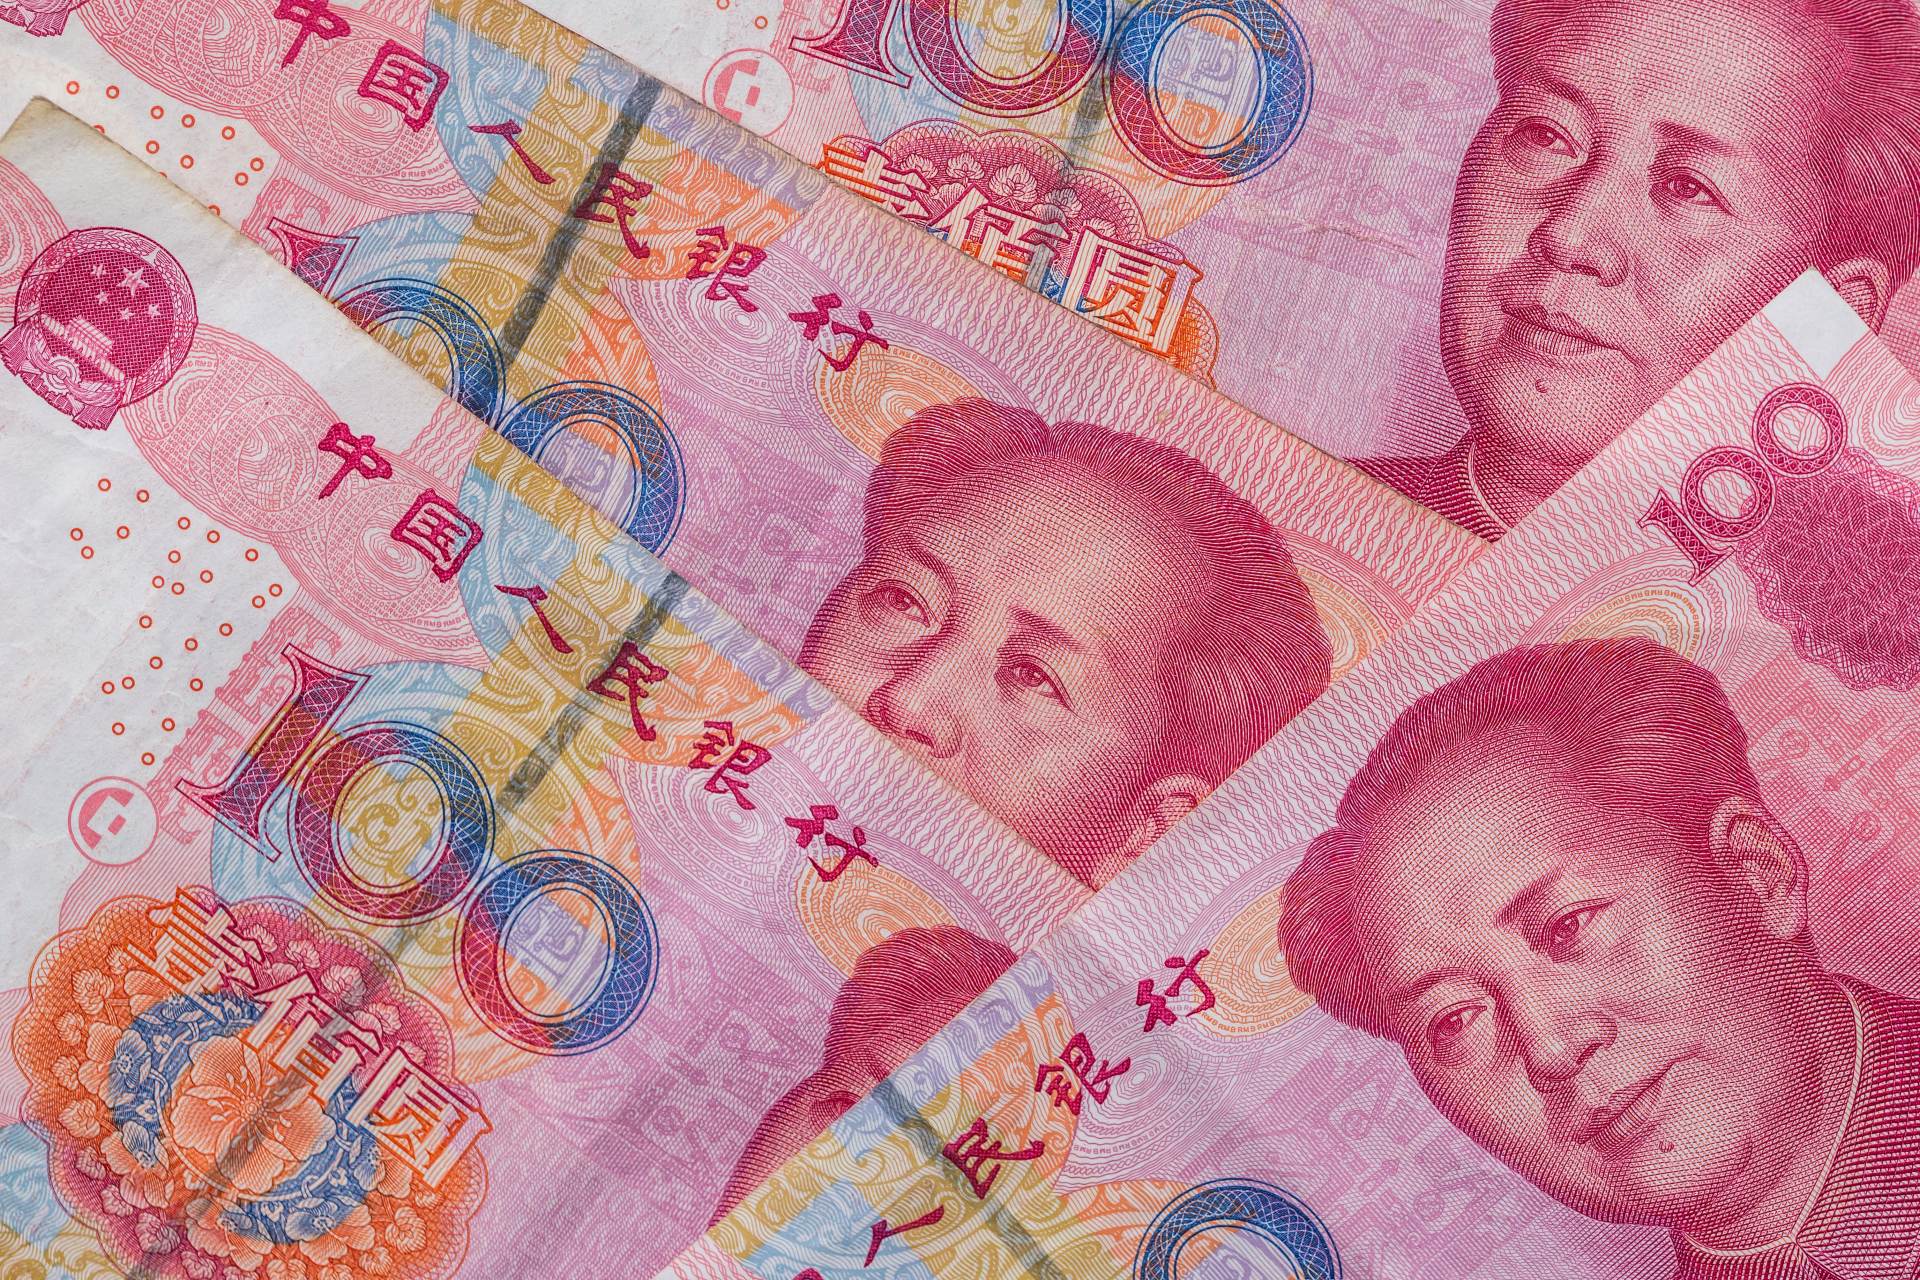  Čína hospodářství finance sazby 